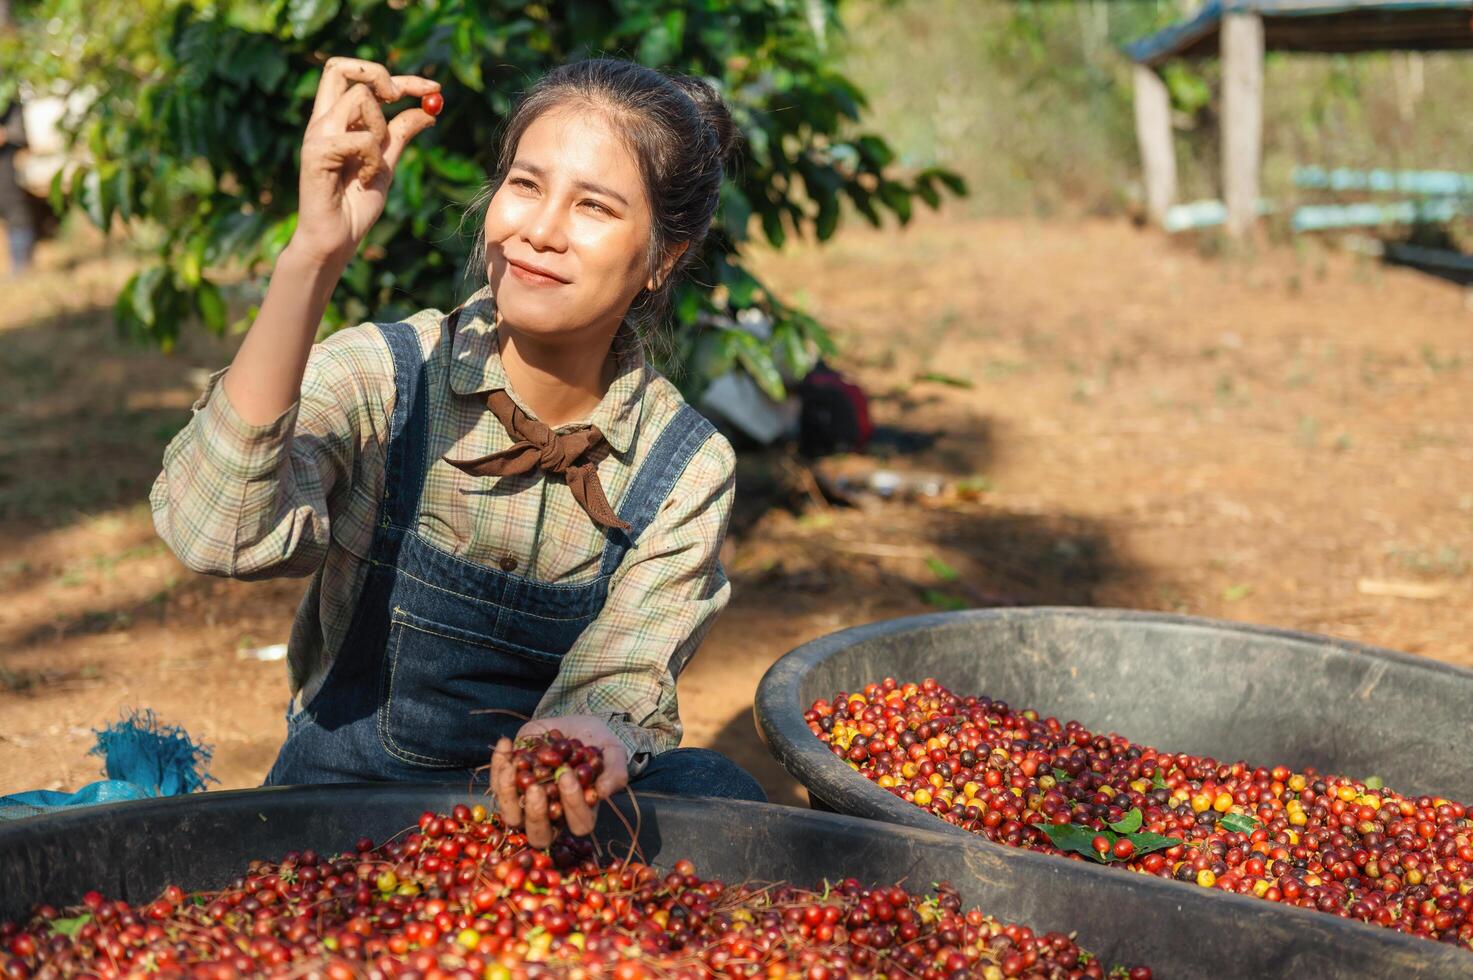 asiatisch Frau pflücken oben roh Kaffee Bohne beim Bauernhof foto